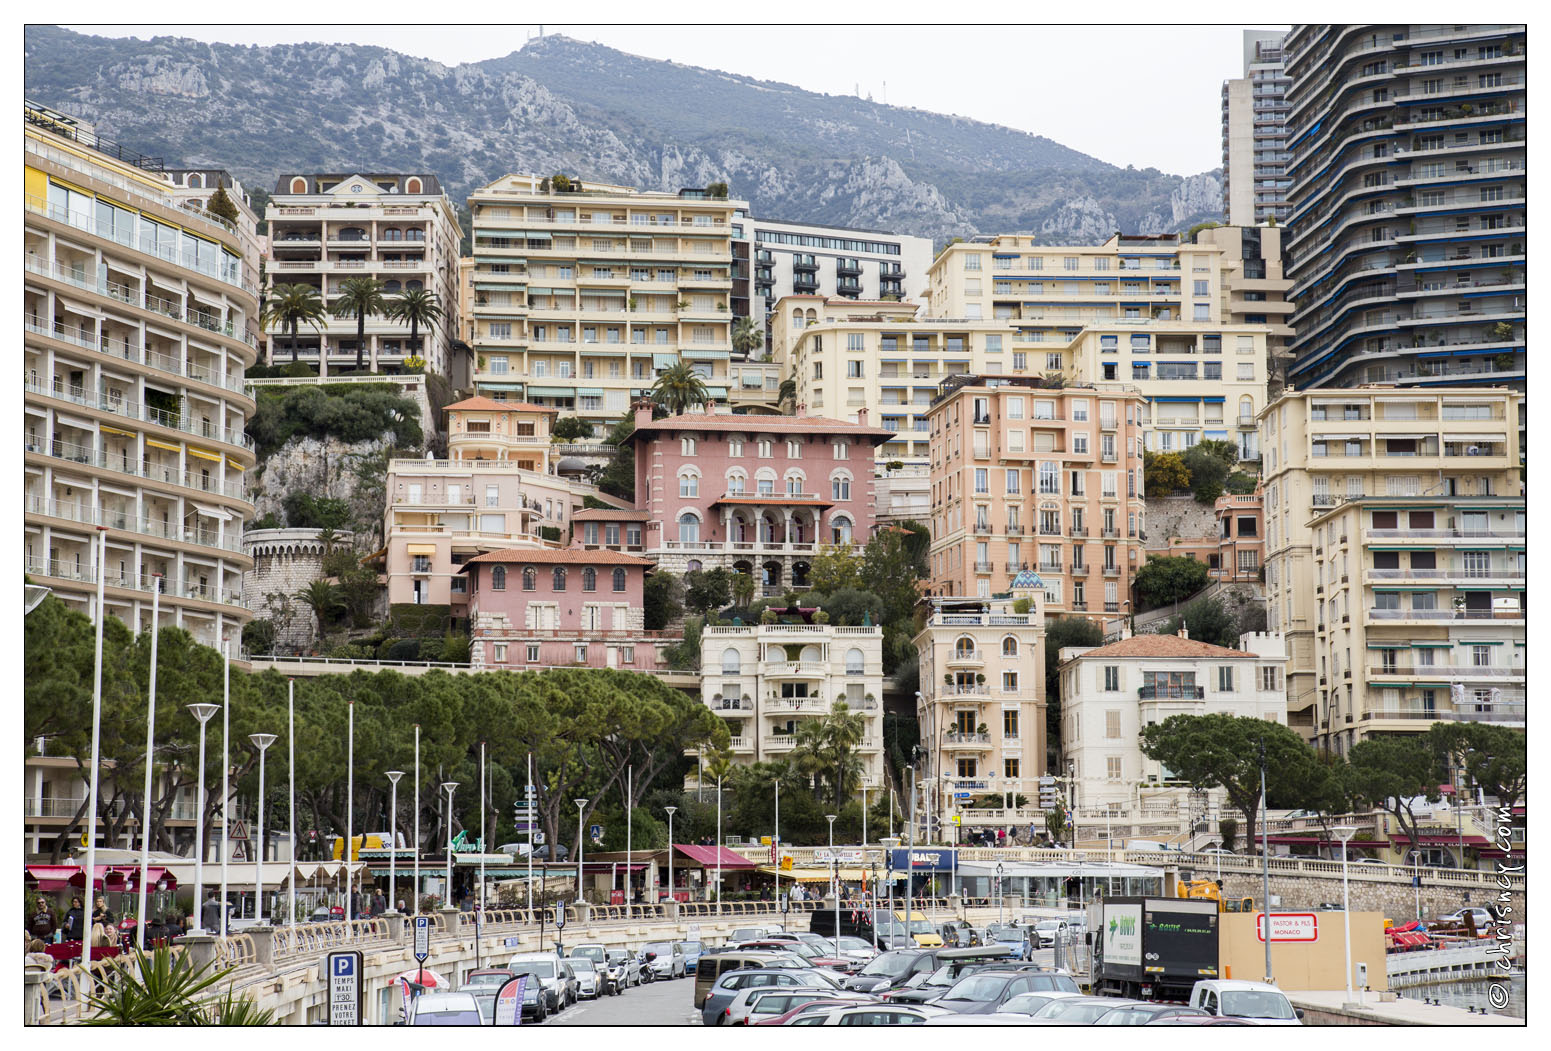 20140228-31_7854-Monaco.jpg